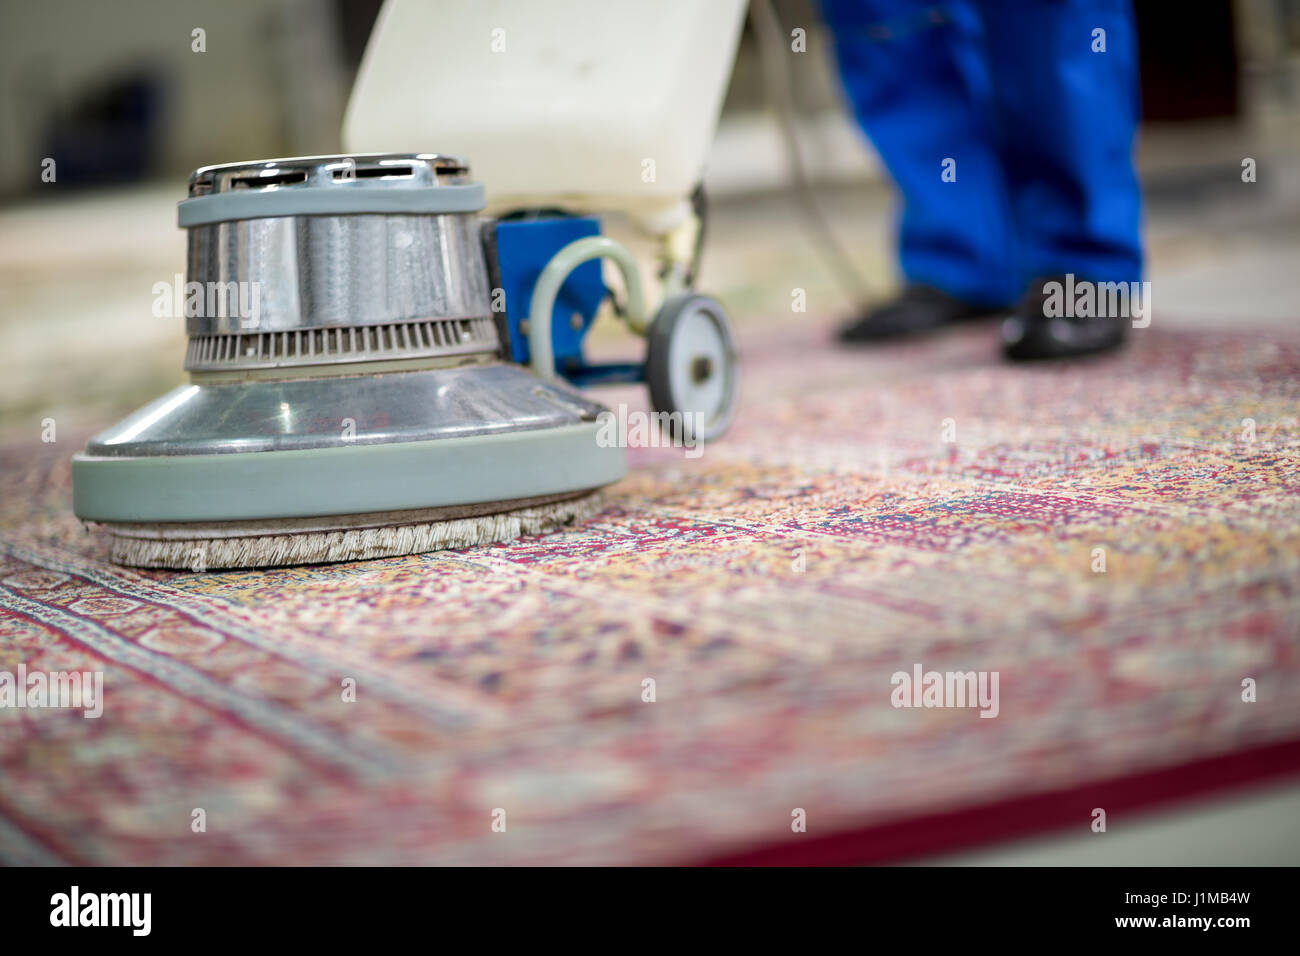 Carpet wash immagini e fotografie stock ad alta risoluzione - Alamy